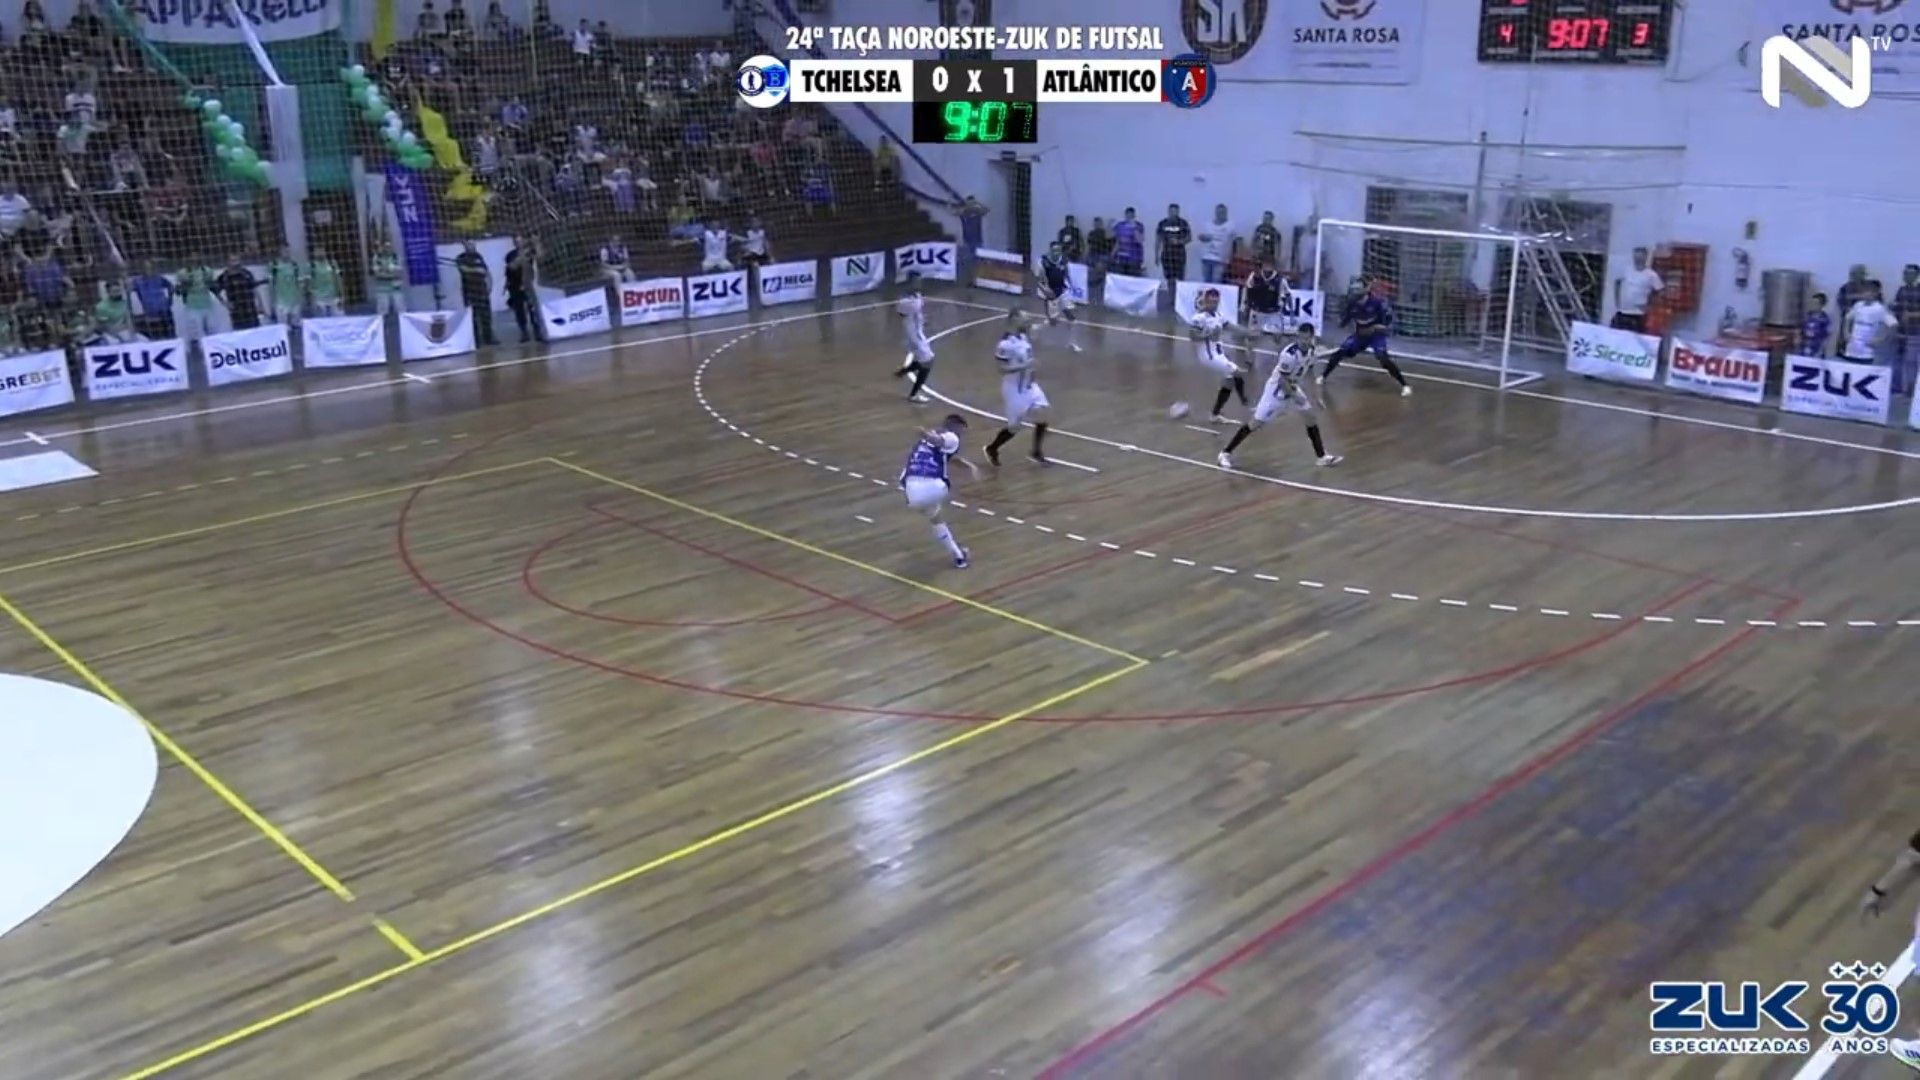 Veja os gols de Tchelsea 3 x 1 Atlântico São Nicolau HFC pela Taça Noroeste Zuk de Futsal